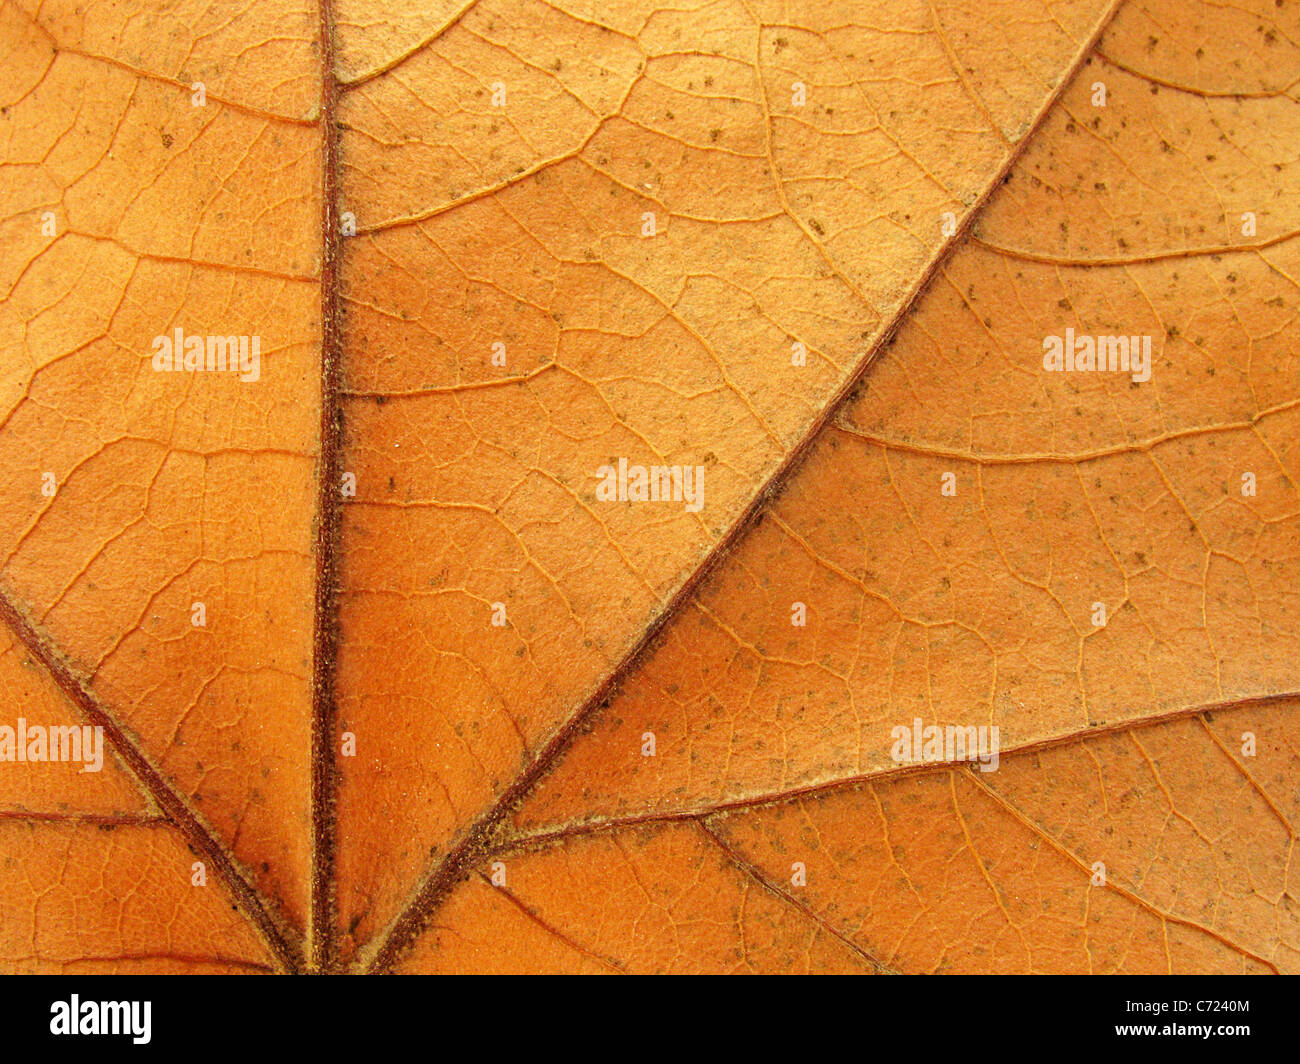 Zusammenfassung Hintergrund: Nahaufnahme von Ahornholz-Blatt-Textur Stockfoto